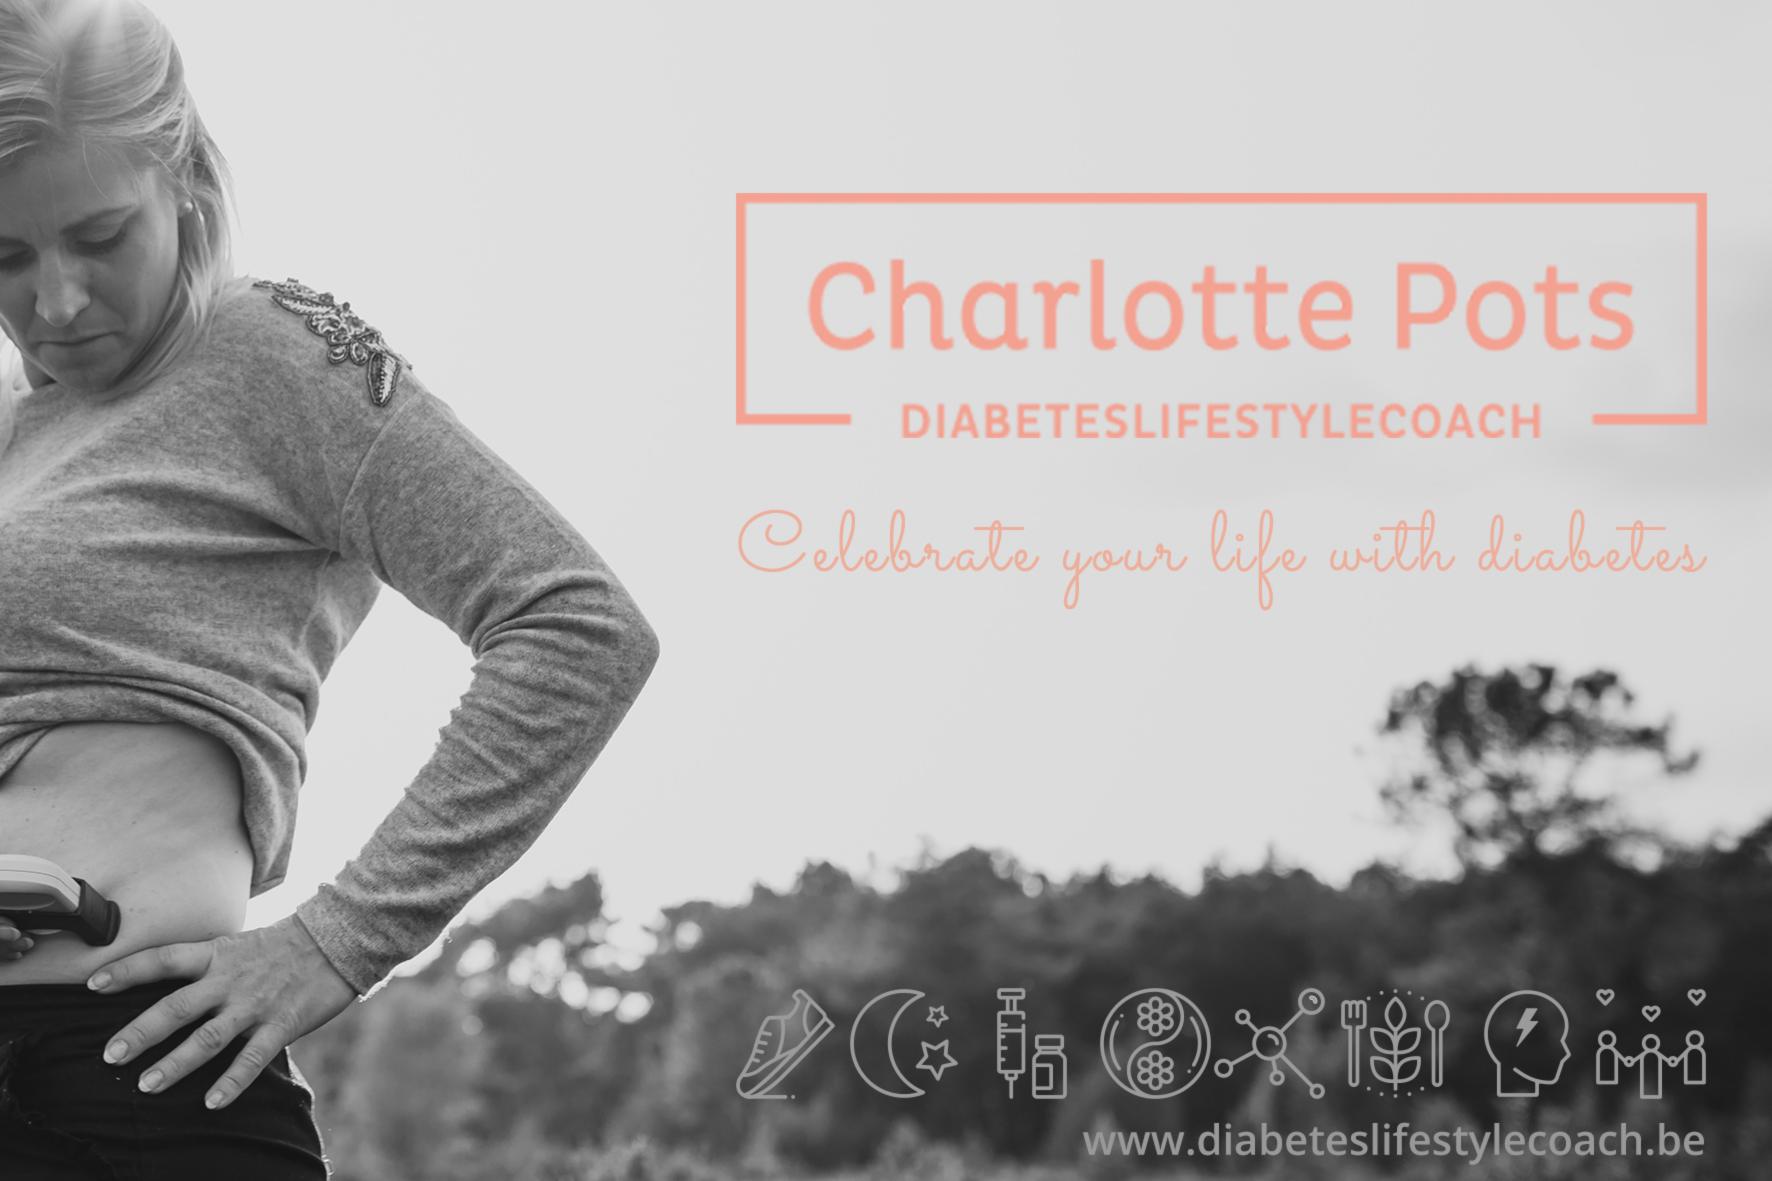 Diabeteslifestylecoach Charlotte Potts